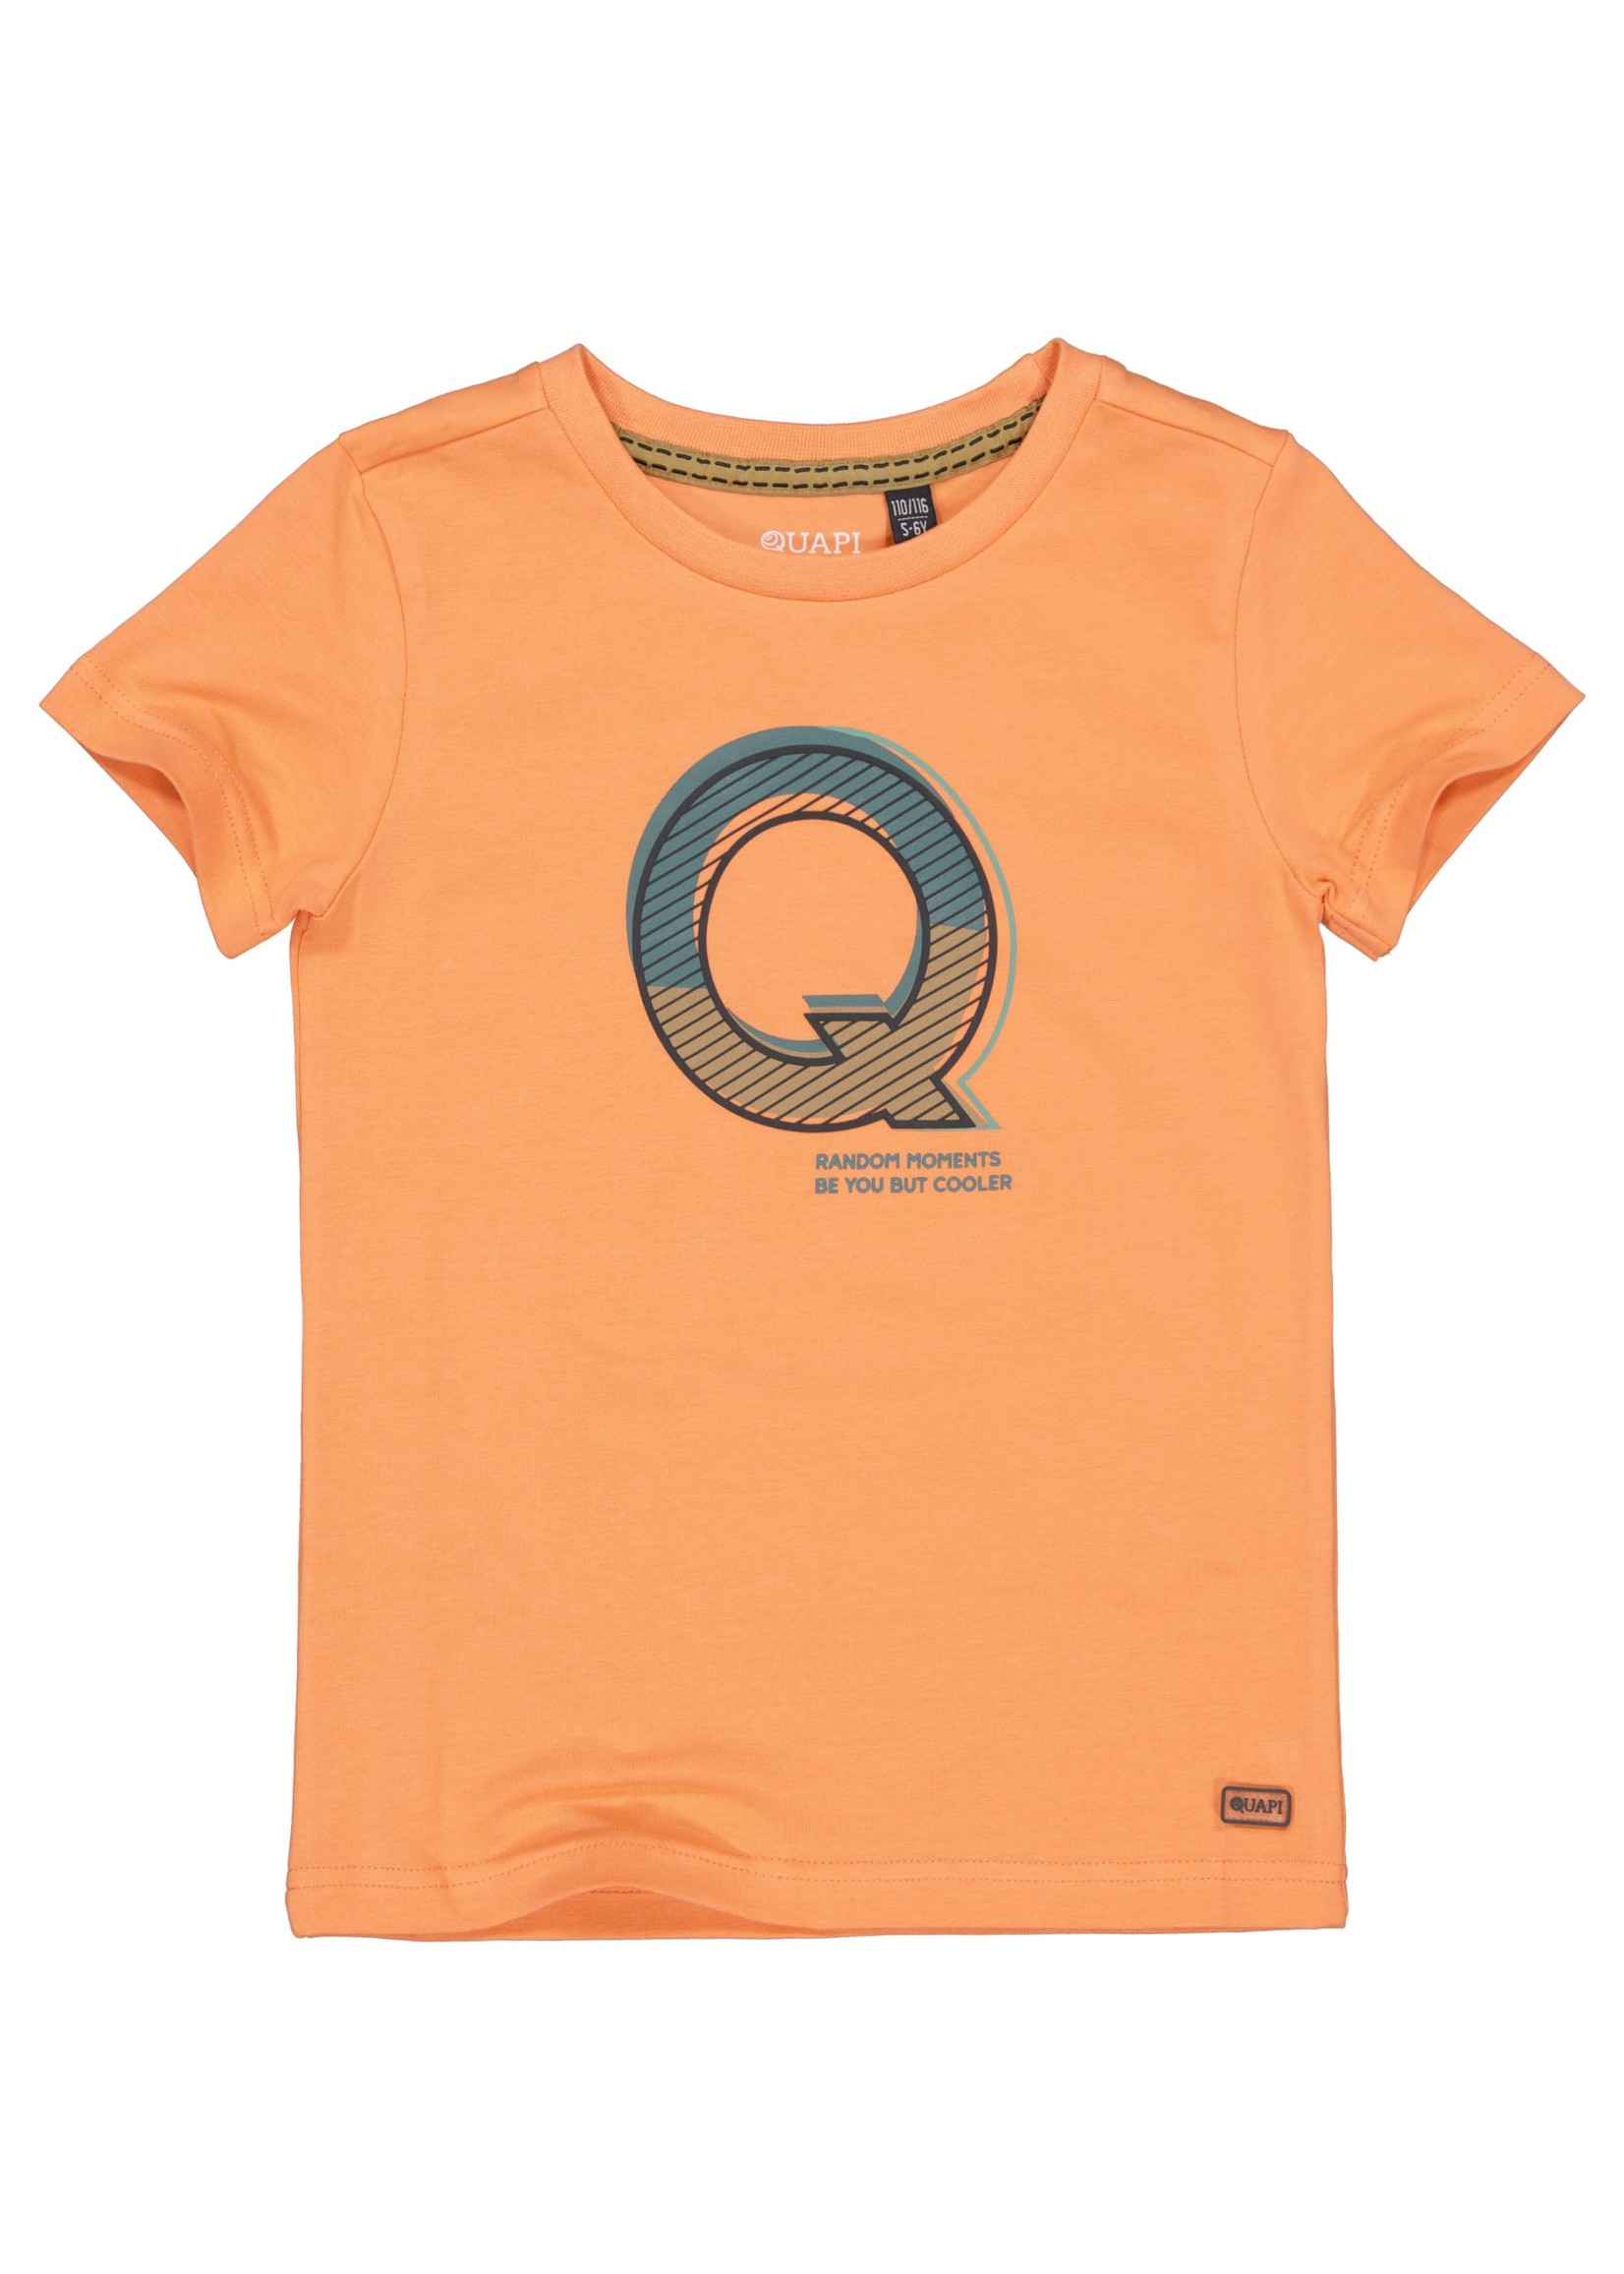 Quapi Shirt Tarek Orange Mandarin